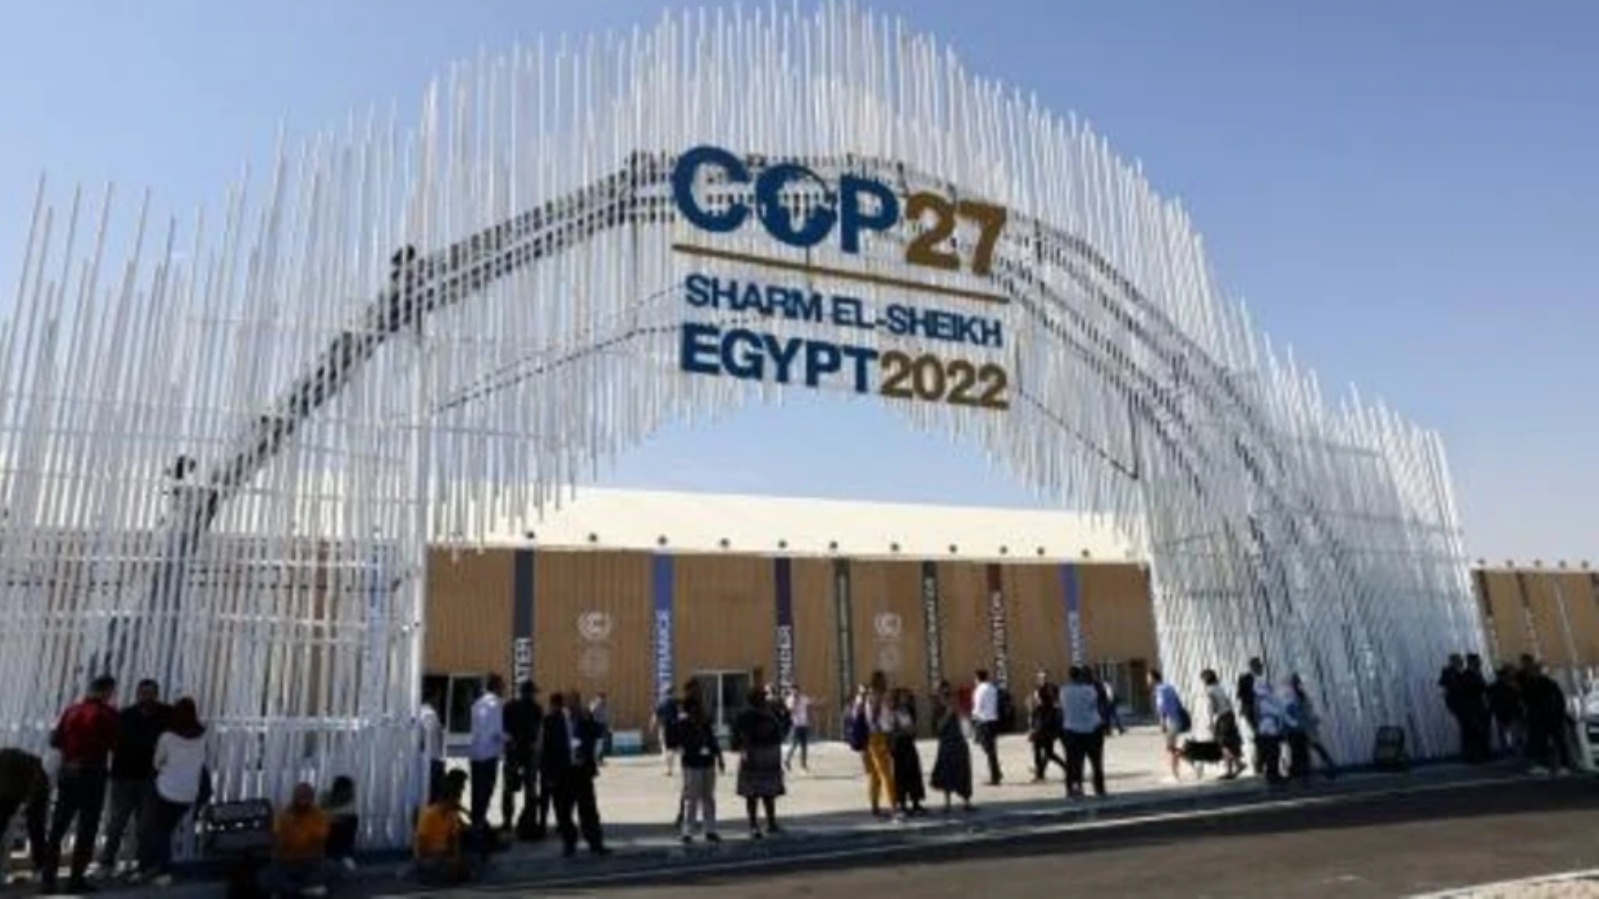 مدخل مركز شرم الشيخ الدولي للمؤتمرات حيث ينعقد مؤتمر المناخ كوب27، في 5 نوفمبر 2022